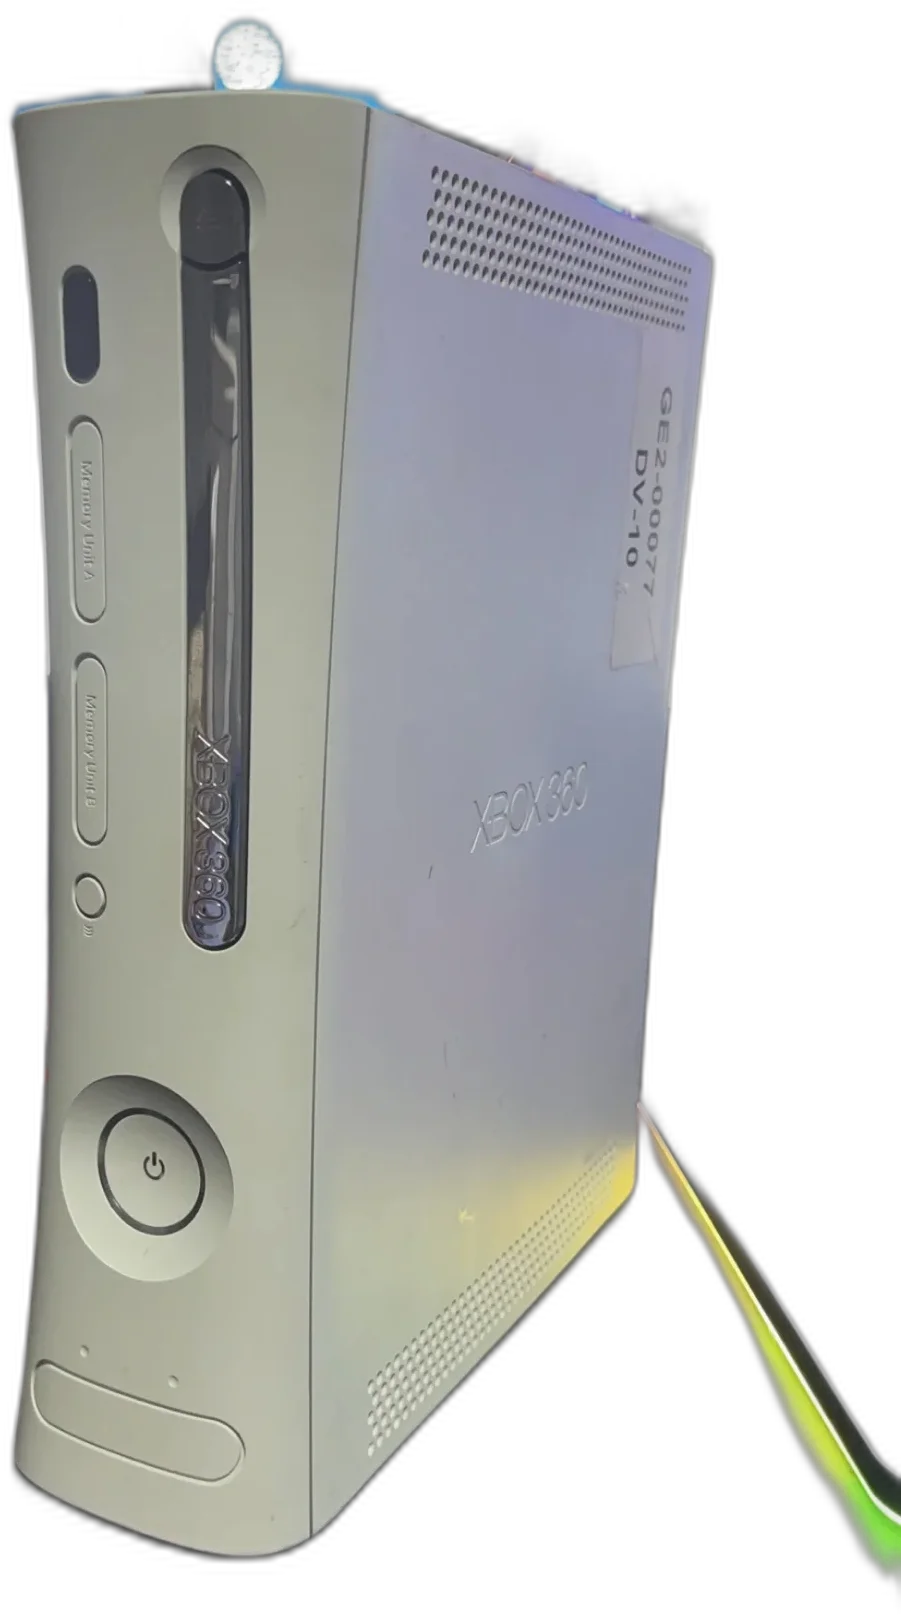  Microsoft Xbox 360 Zephyr DV-10 GE2-00077 Stress Kit Prototype